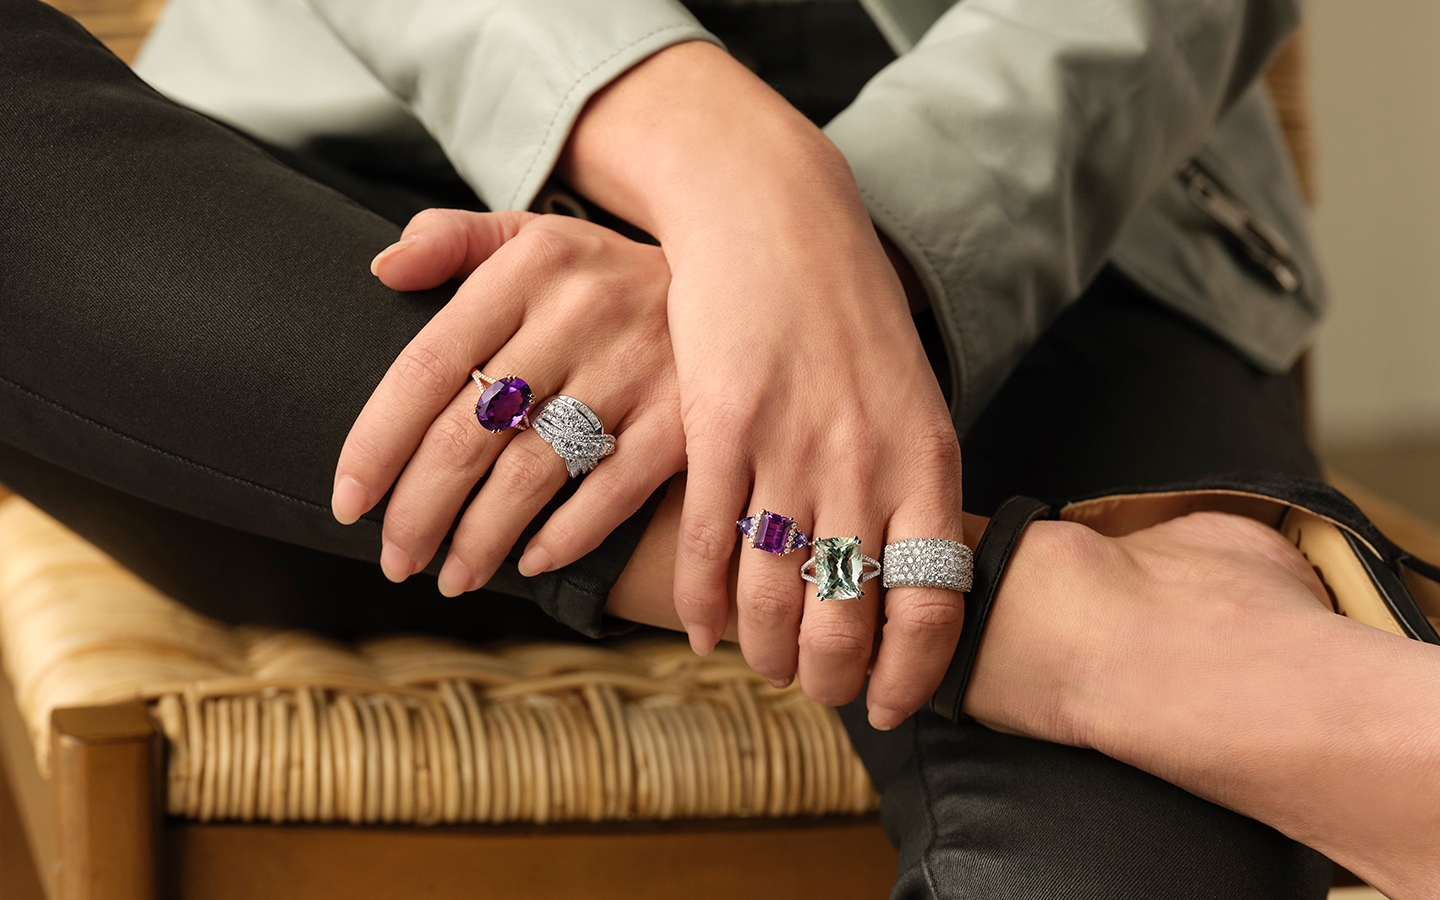 A sneak peak of our AW16 rings... #rings #silver #manicure #glitz |  Juwelen, Sieraden, Boho sieraden